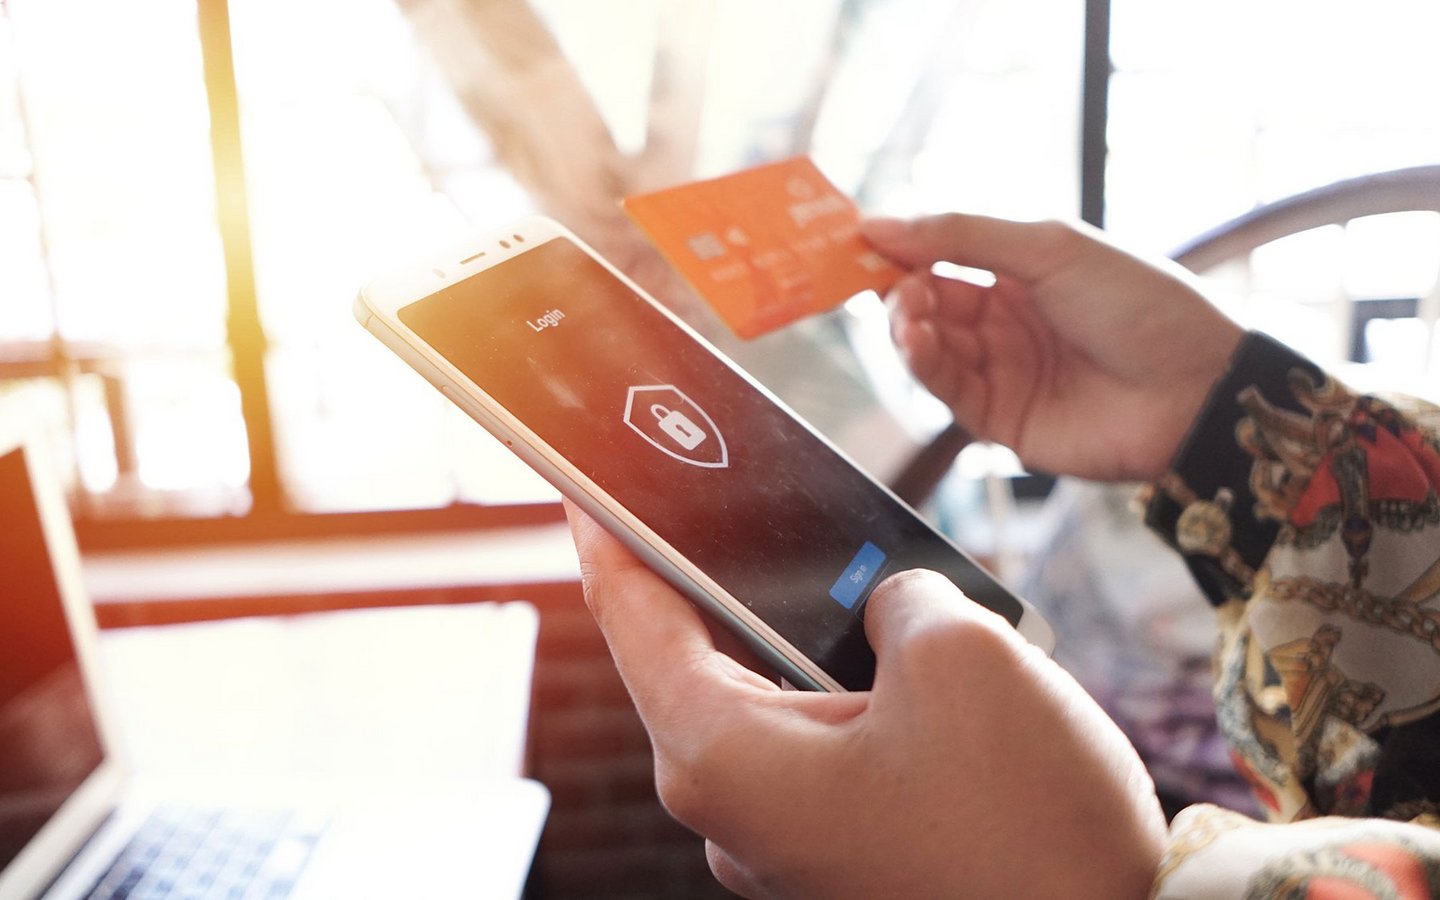 Die linke Hand hält ein Smartphone, das eine Zahlung auf einem Login-Bildschirm verifiziert, die rechte Hand hält eine Kreditkarte.